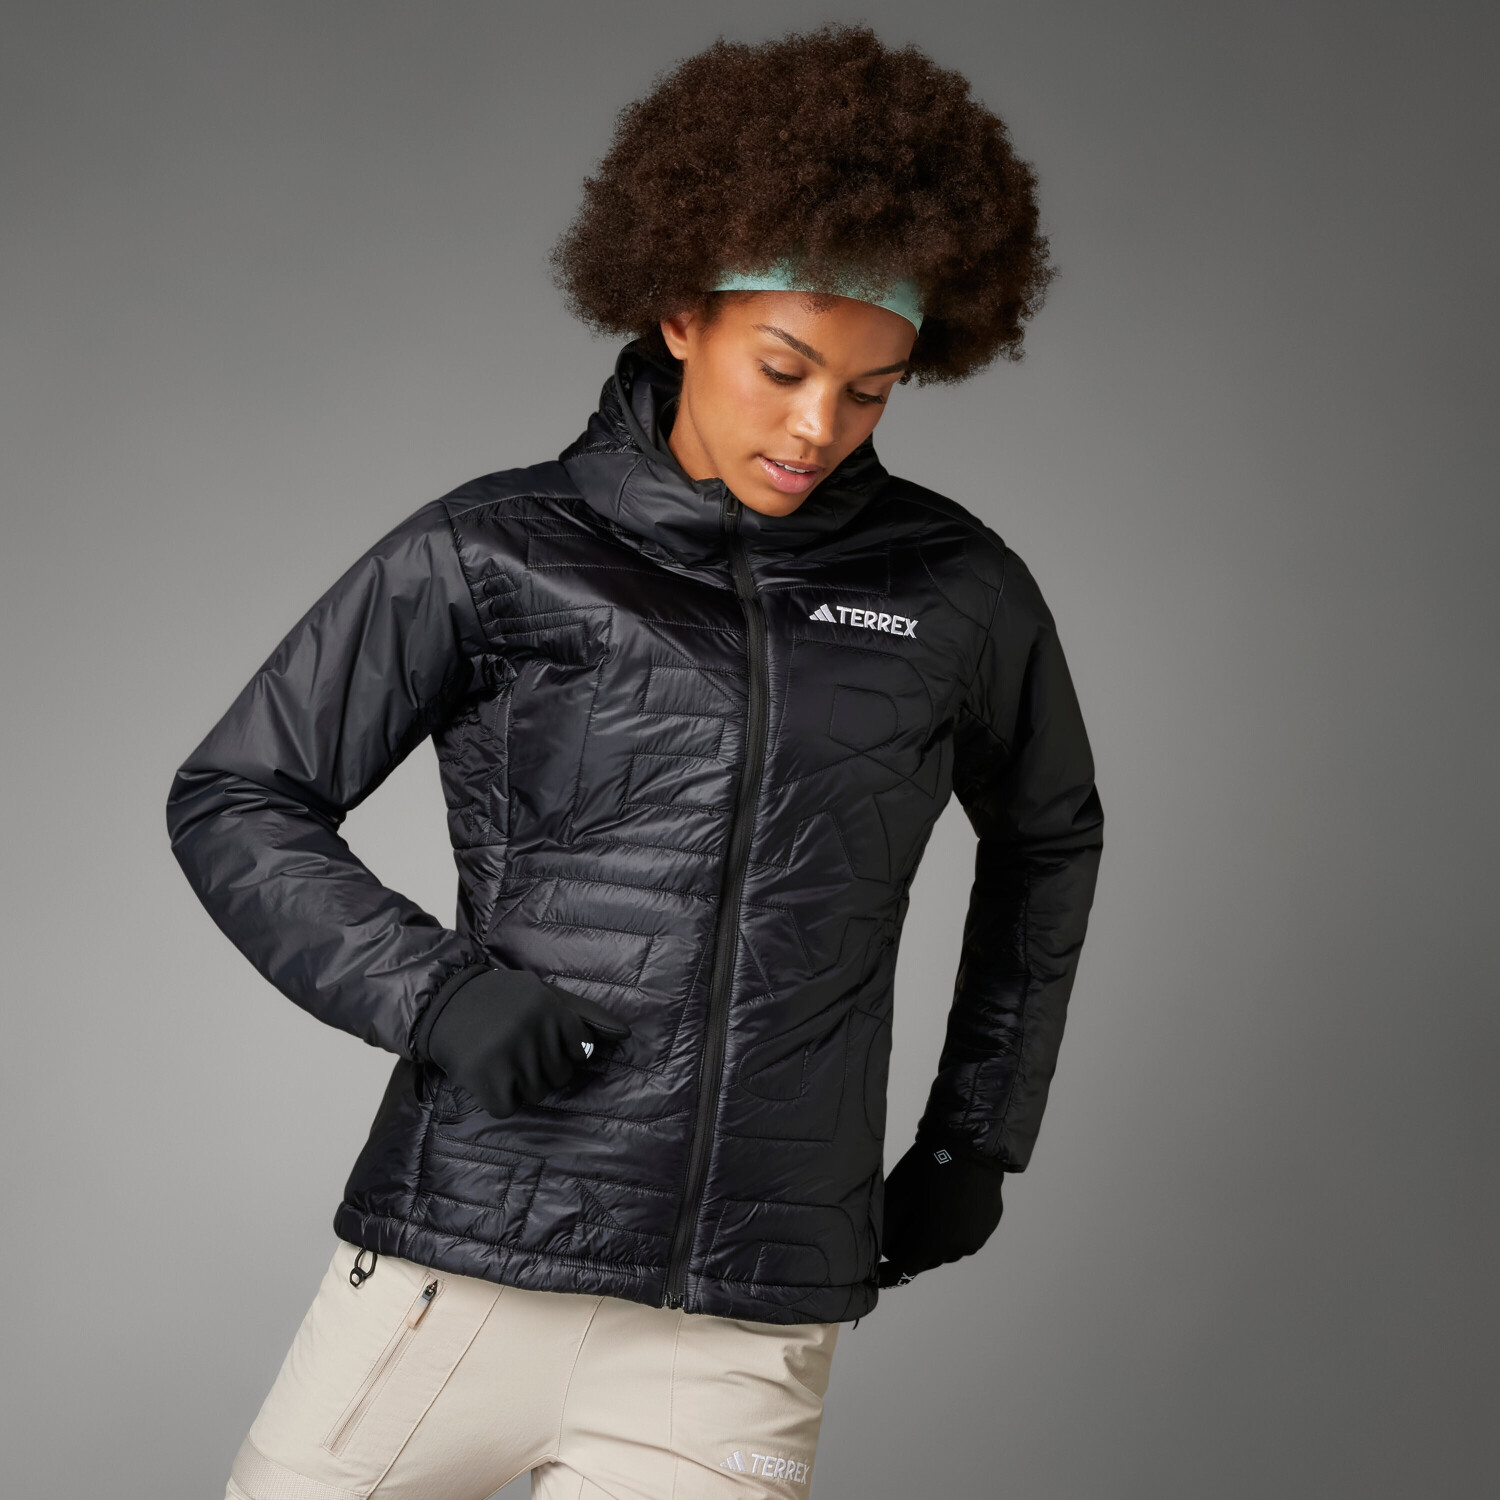 Adidas Woman Terrex ab 129,59 Varilite Preisvergleich | Xperior (IB4183) Hooded black Jacket bei € PrimaLoft